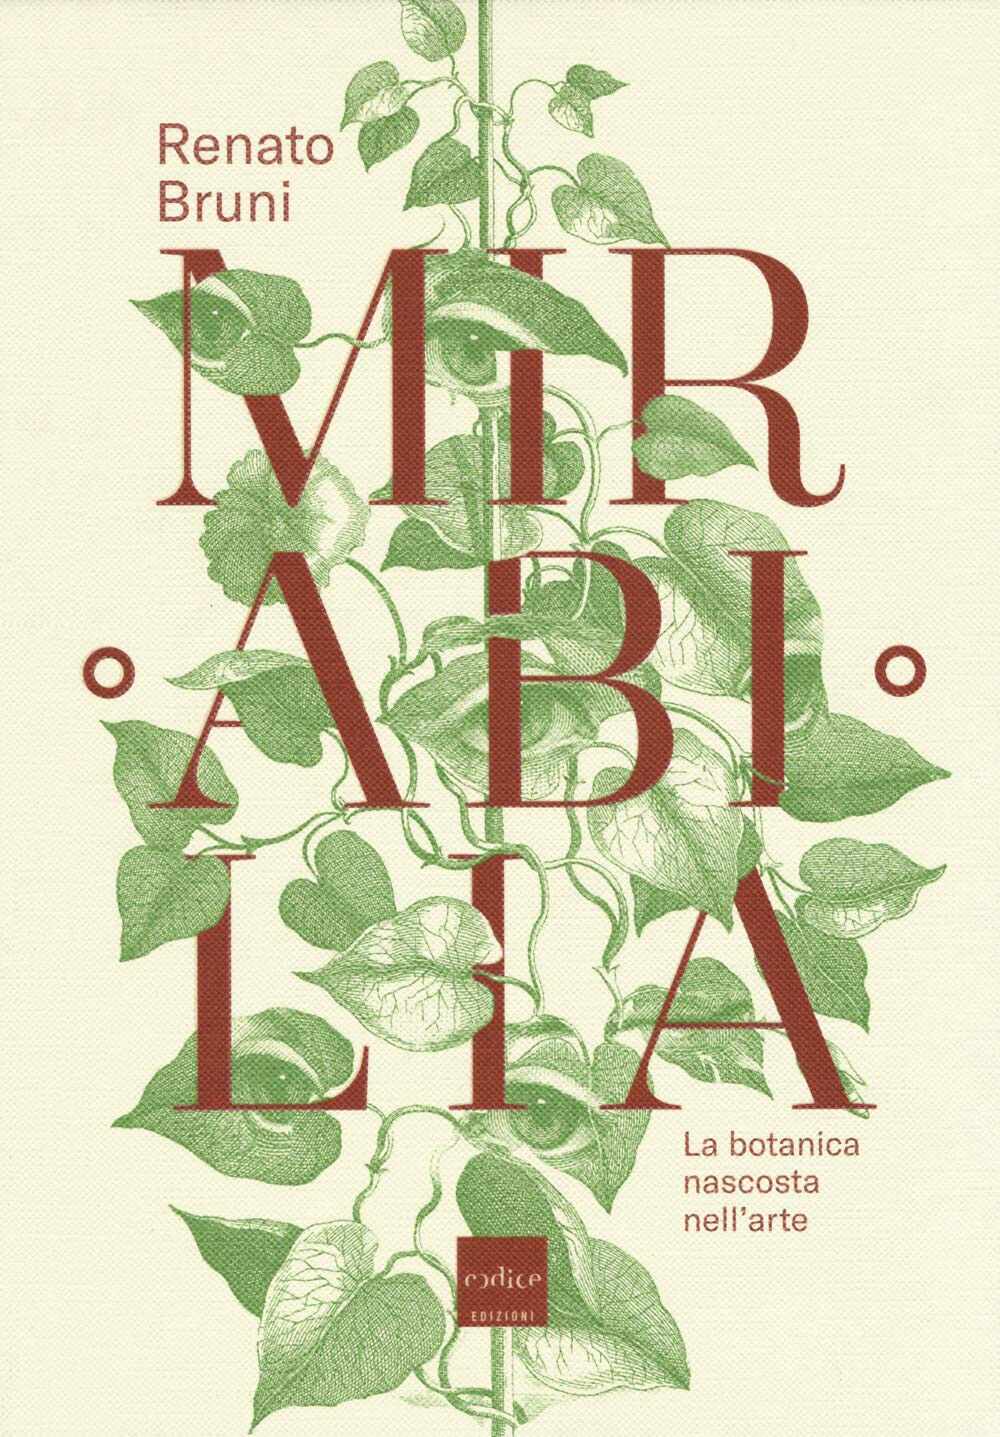 Mirabilia. La botanica nascosta nell'arte - Renato Bruni - Codice, 2018 libro usato